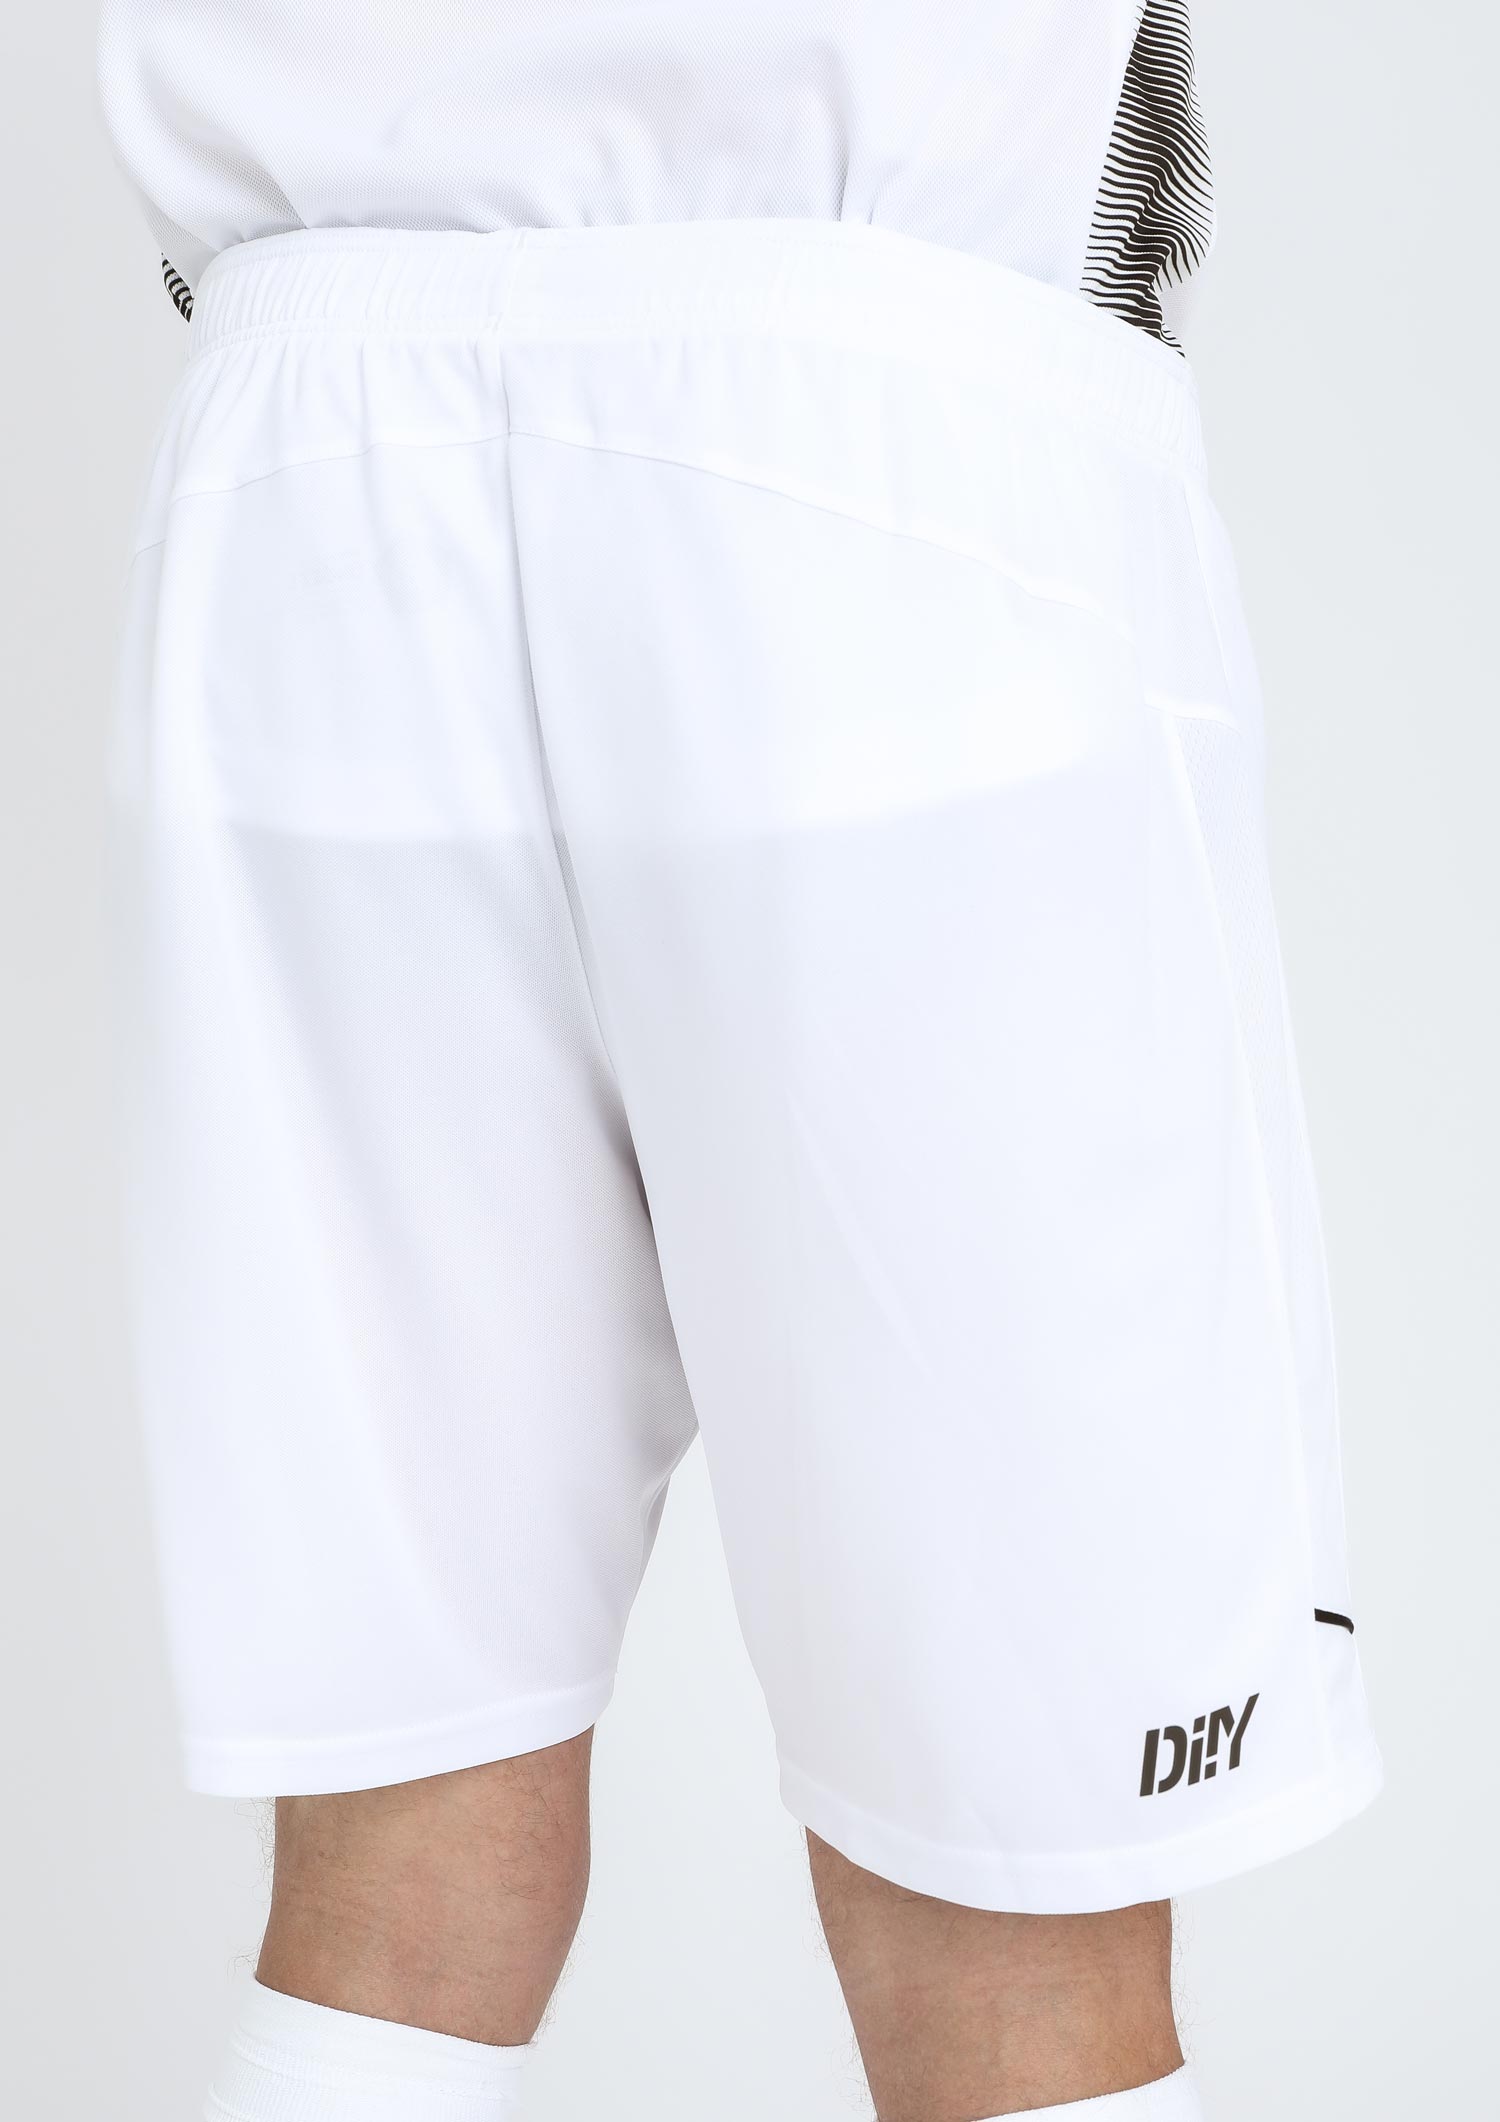 DIIY - Shorts Away 2023-24